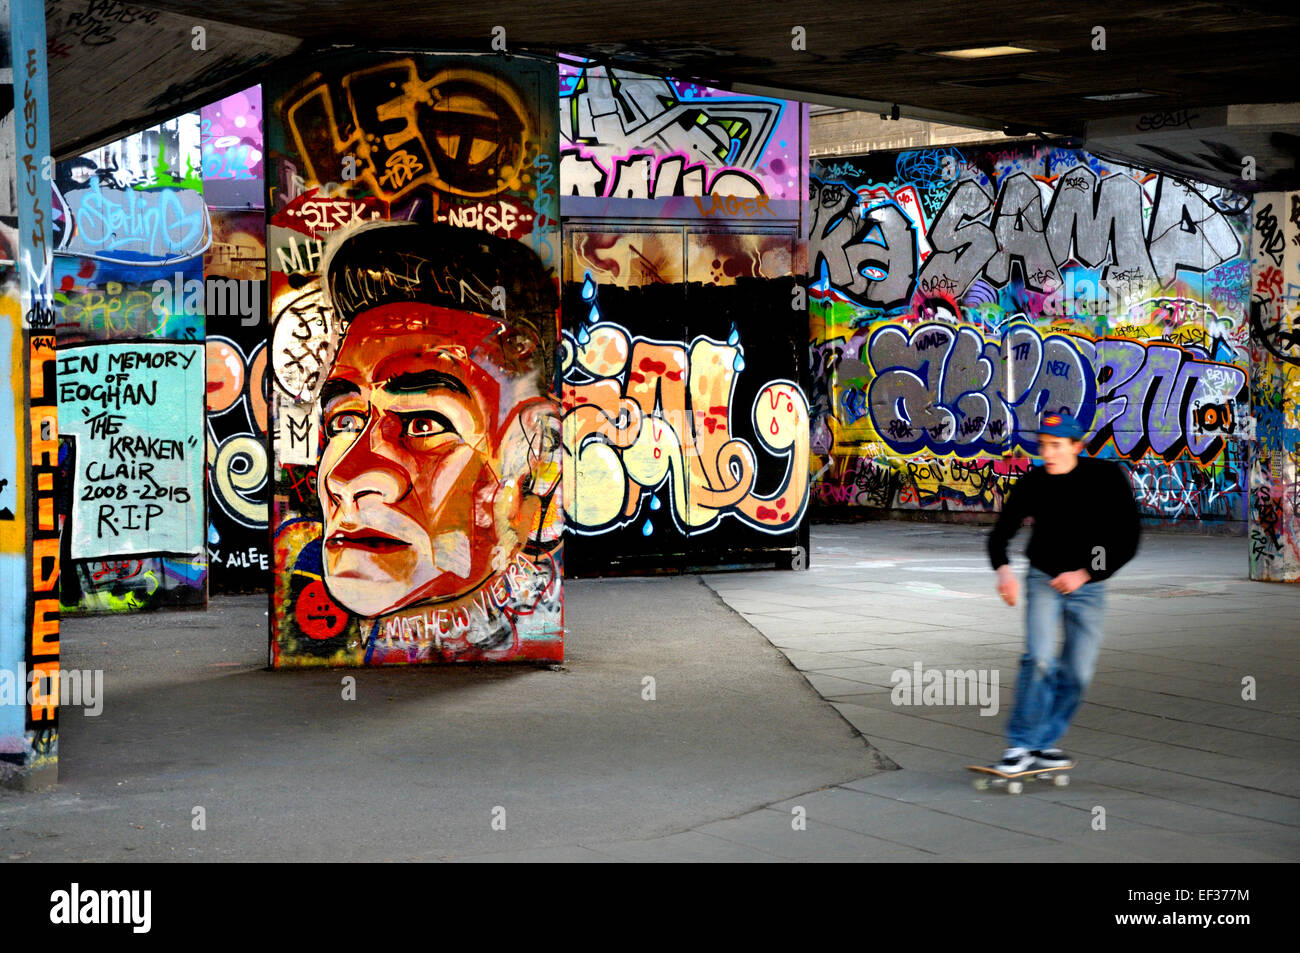 London, England, Vereinigtes Königreich. Undercroft unterhalb des Nationaltheaters - Veranstaltungsort für skateboarding und graffiti Stockfoto